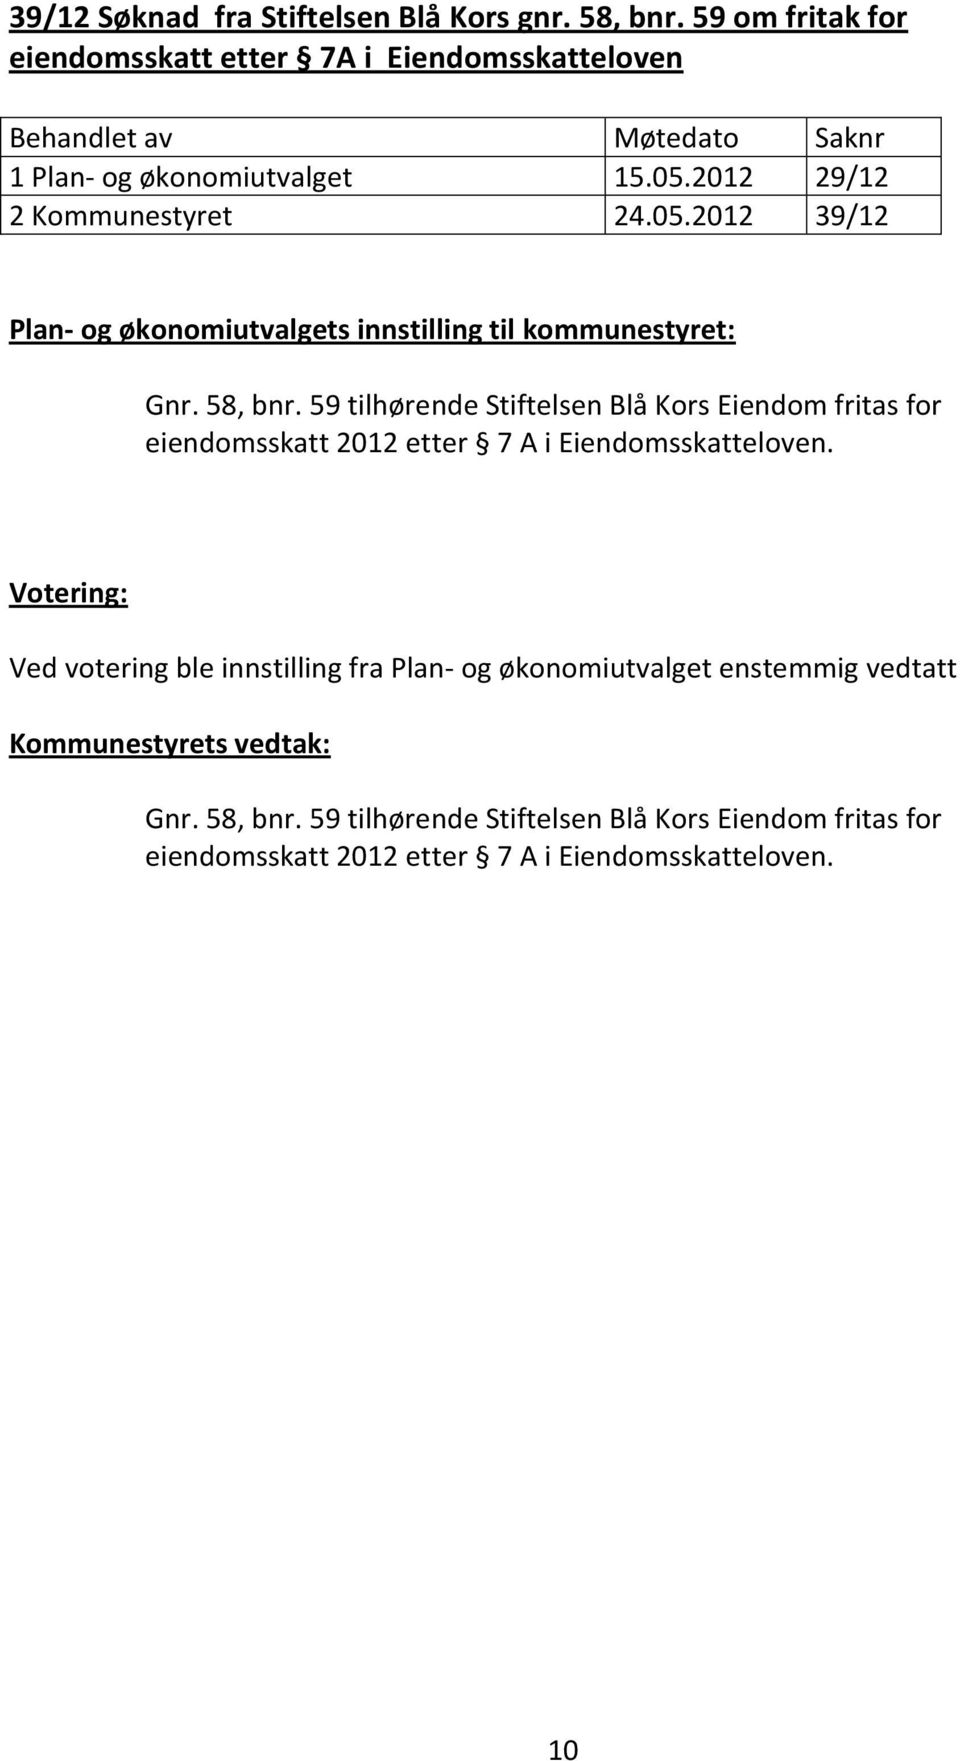 59 tilhørende Stiftelsen Blå Kors Eiendom fritas for eiendomsskatt 2012 etter 7 A i Eiendomsskatteloven.